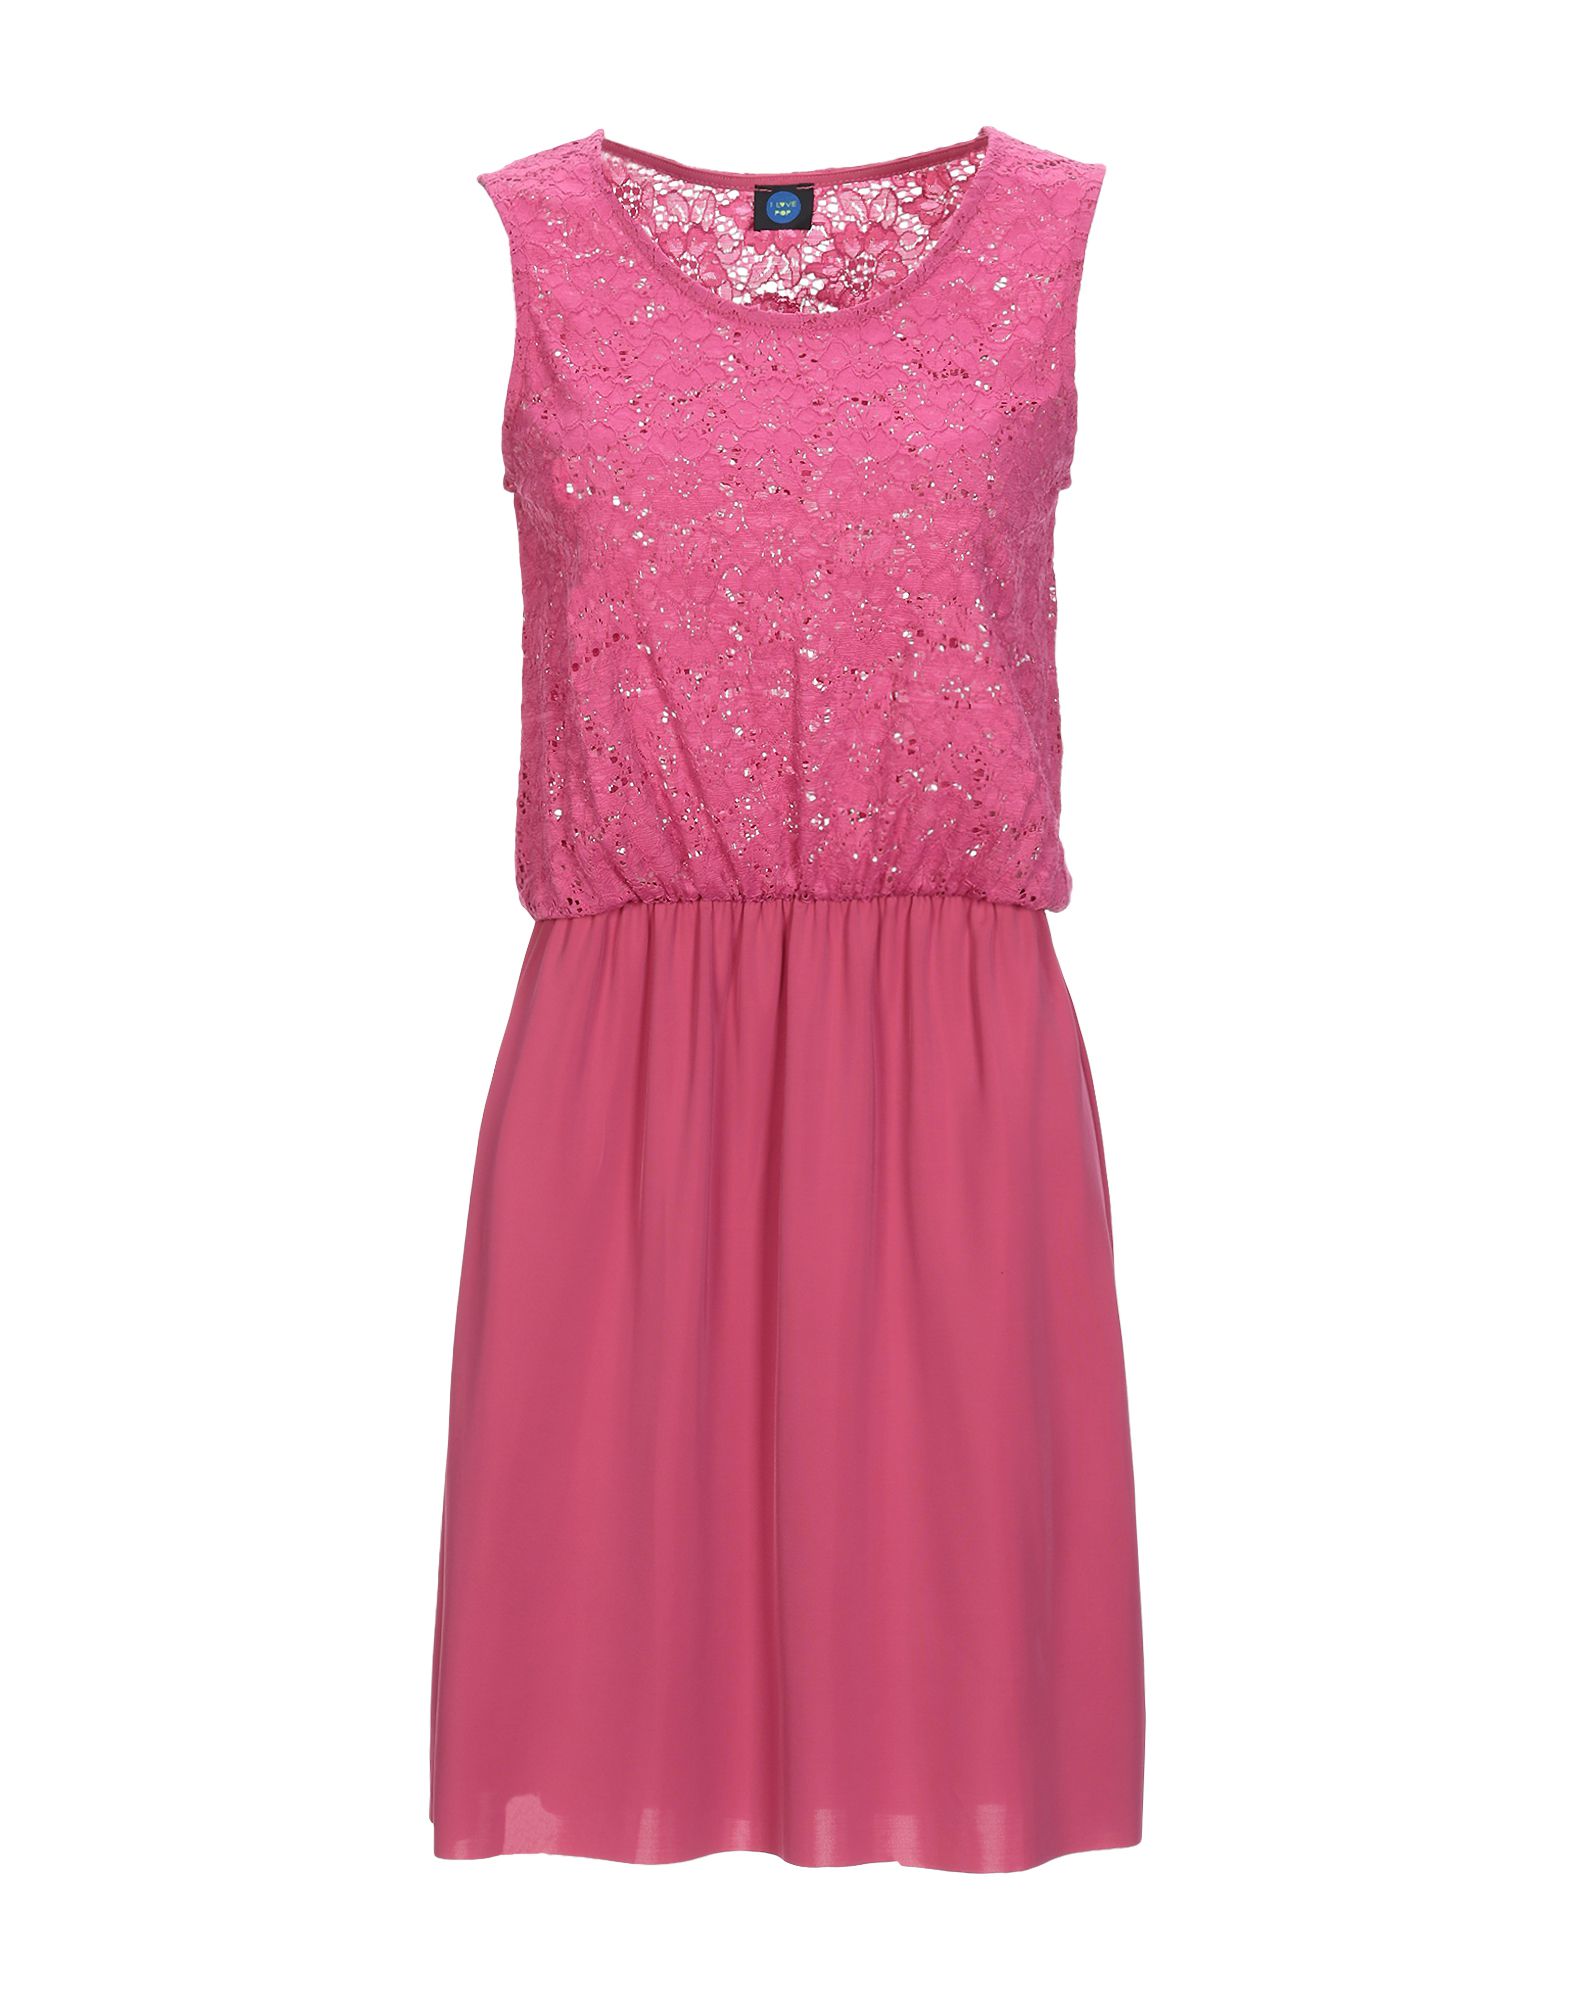 Короткое платье  - Розовый,Синий цвет